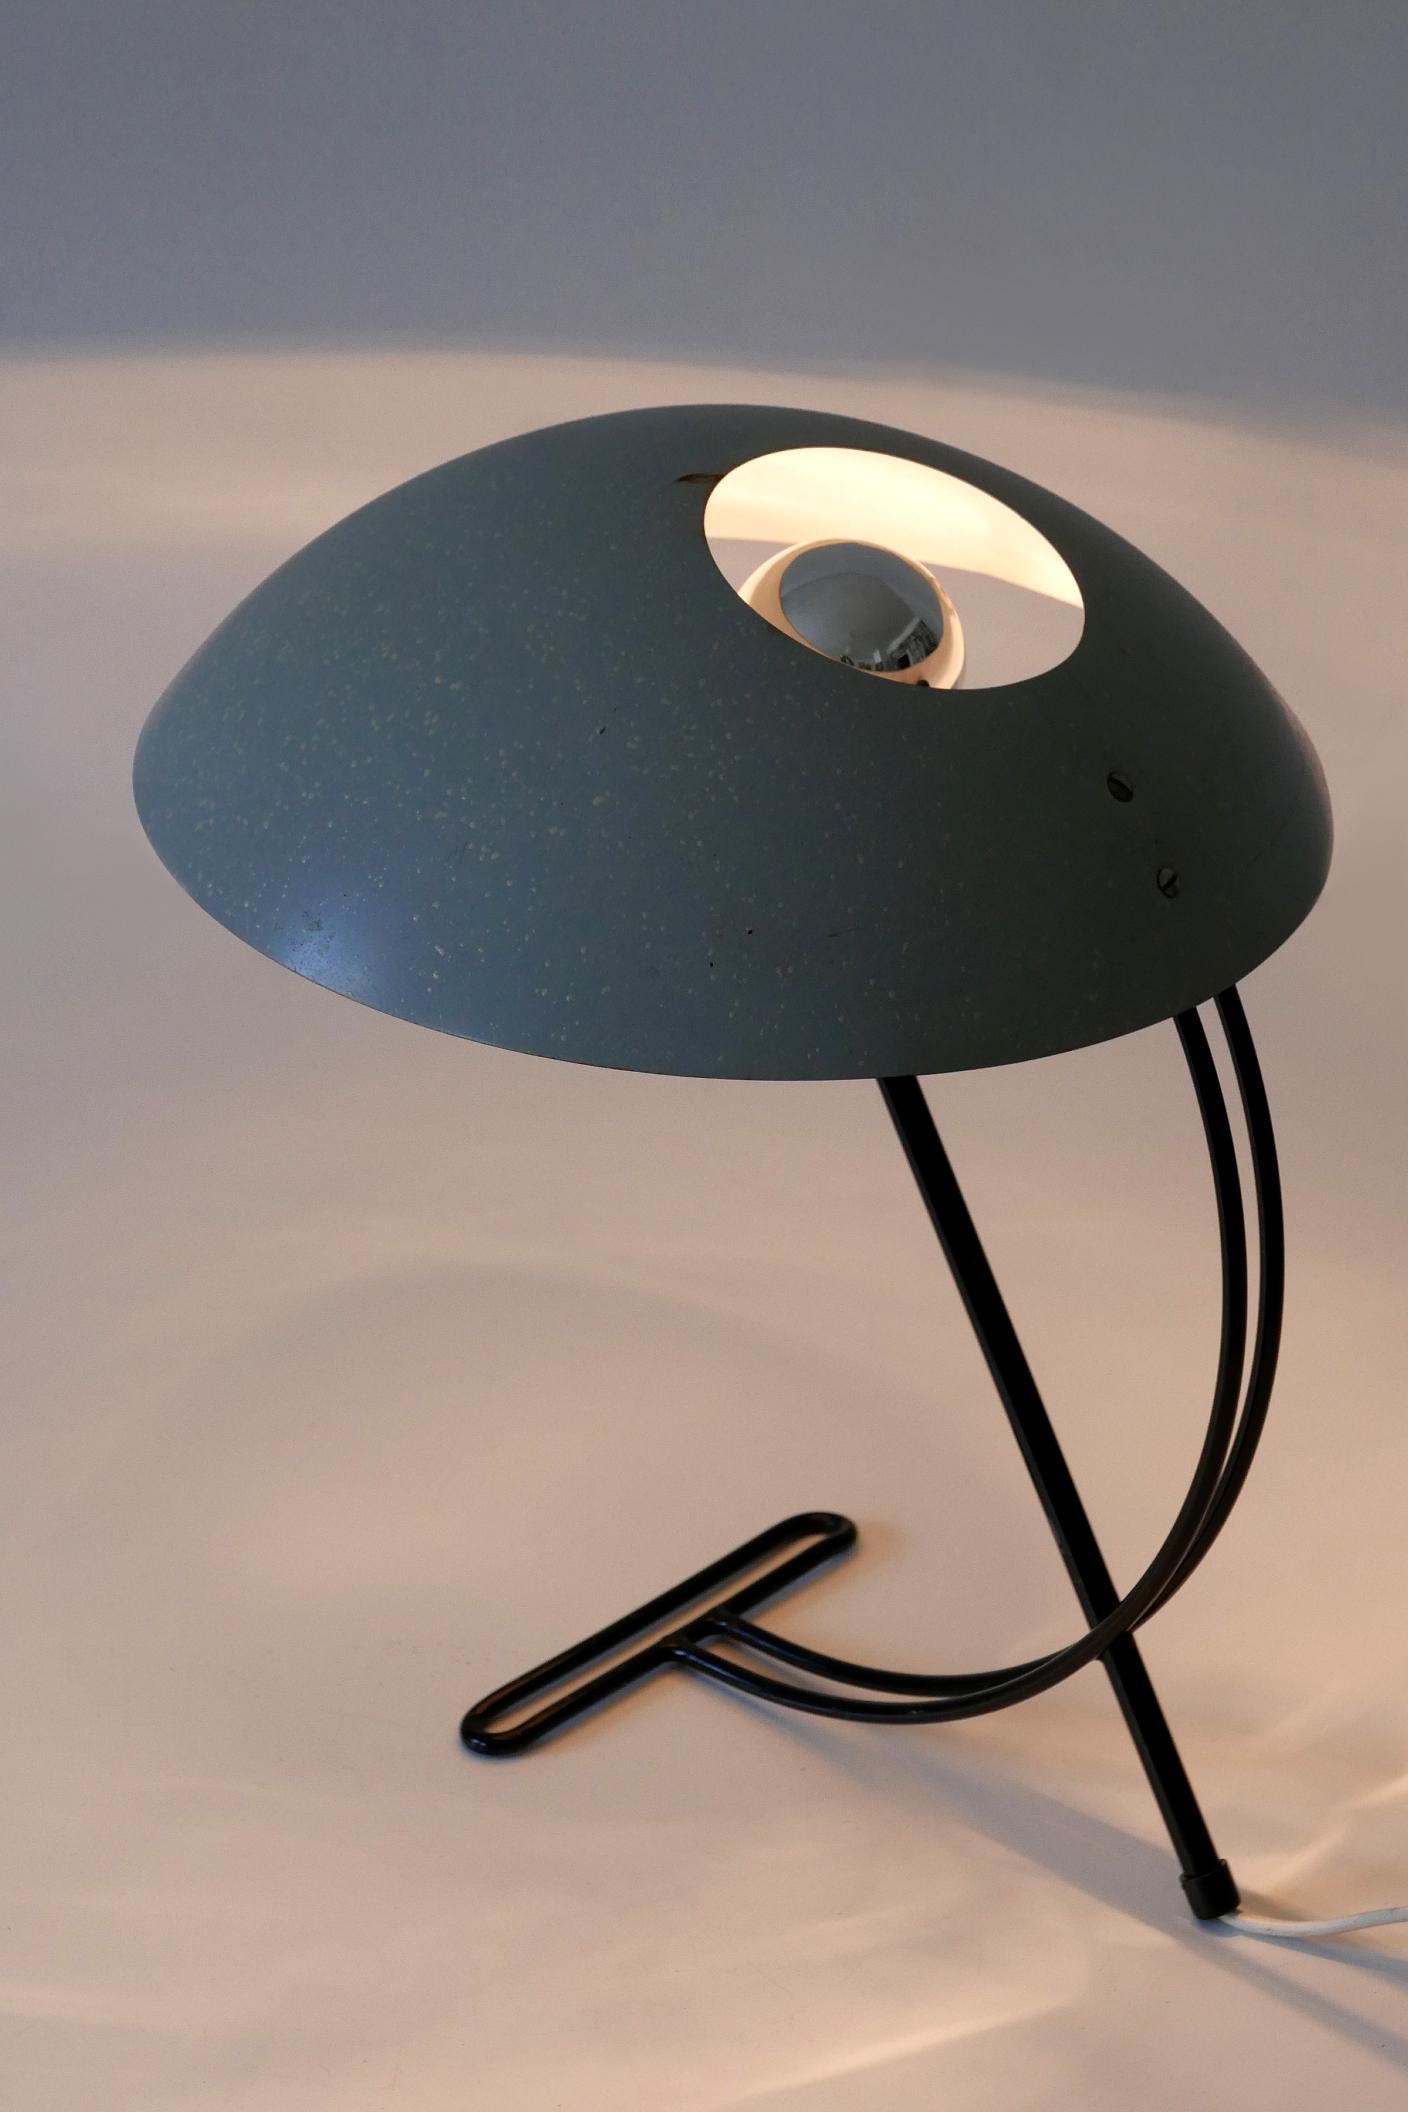 Elégante lampe de table ou de bureau NB100 de style moderne du milieu du siècle. Conçu par Louis Kalff pour Philips, Pays-Bas, années 1950.

Réalisée en tube et tôle métalliques, la lampe de table est livrée avec 1 douille à vis E27 / E26 Edison,